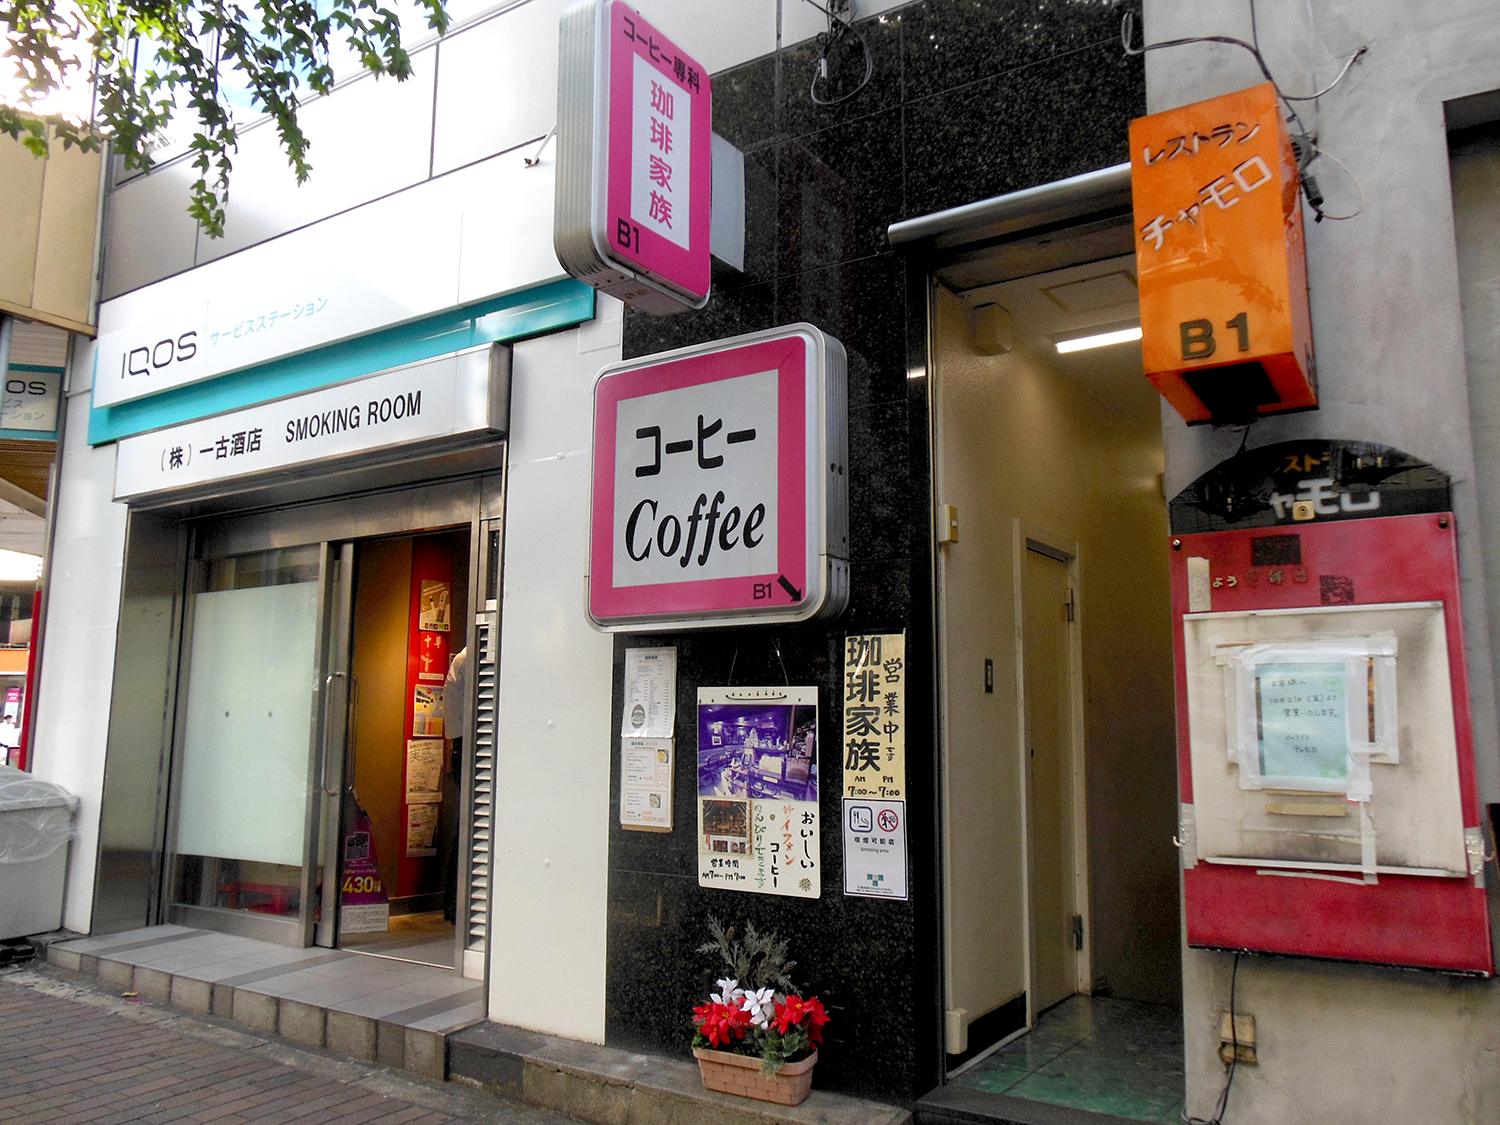 恵比寿南交差点の角に店を構える『一古酒店』に隣接するビルの地下1階。